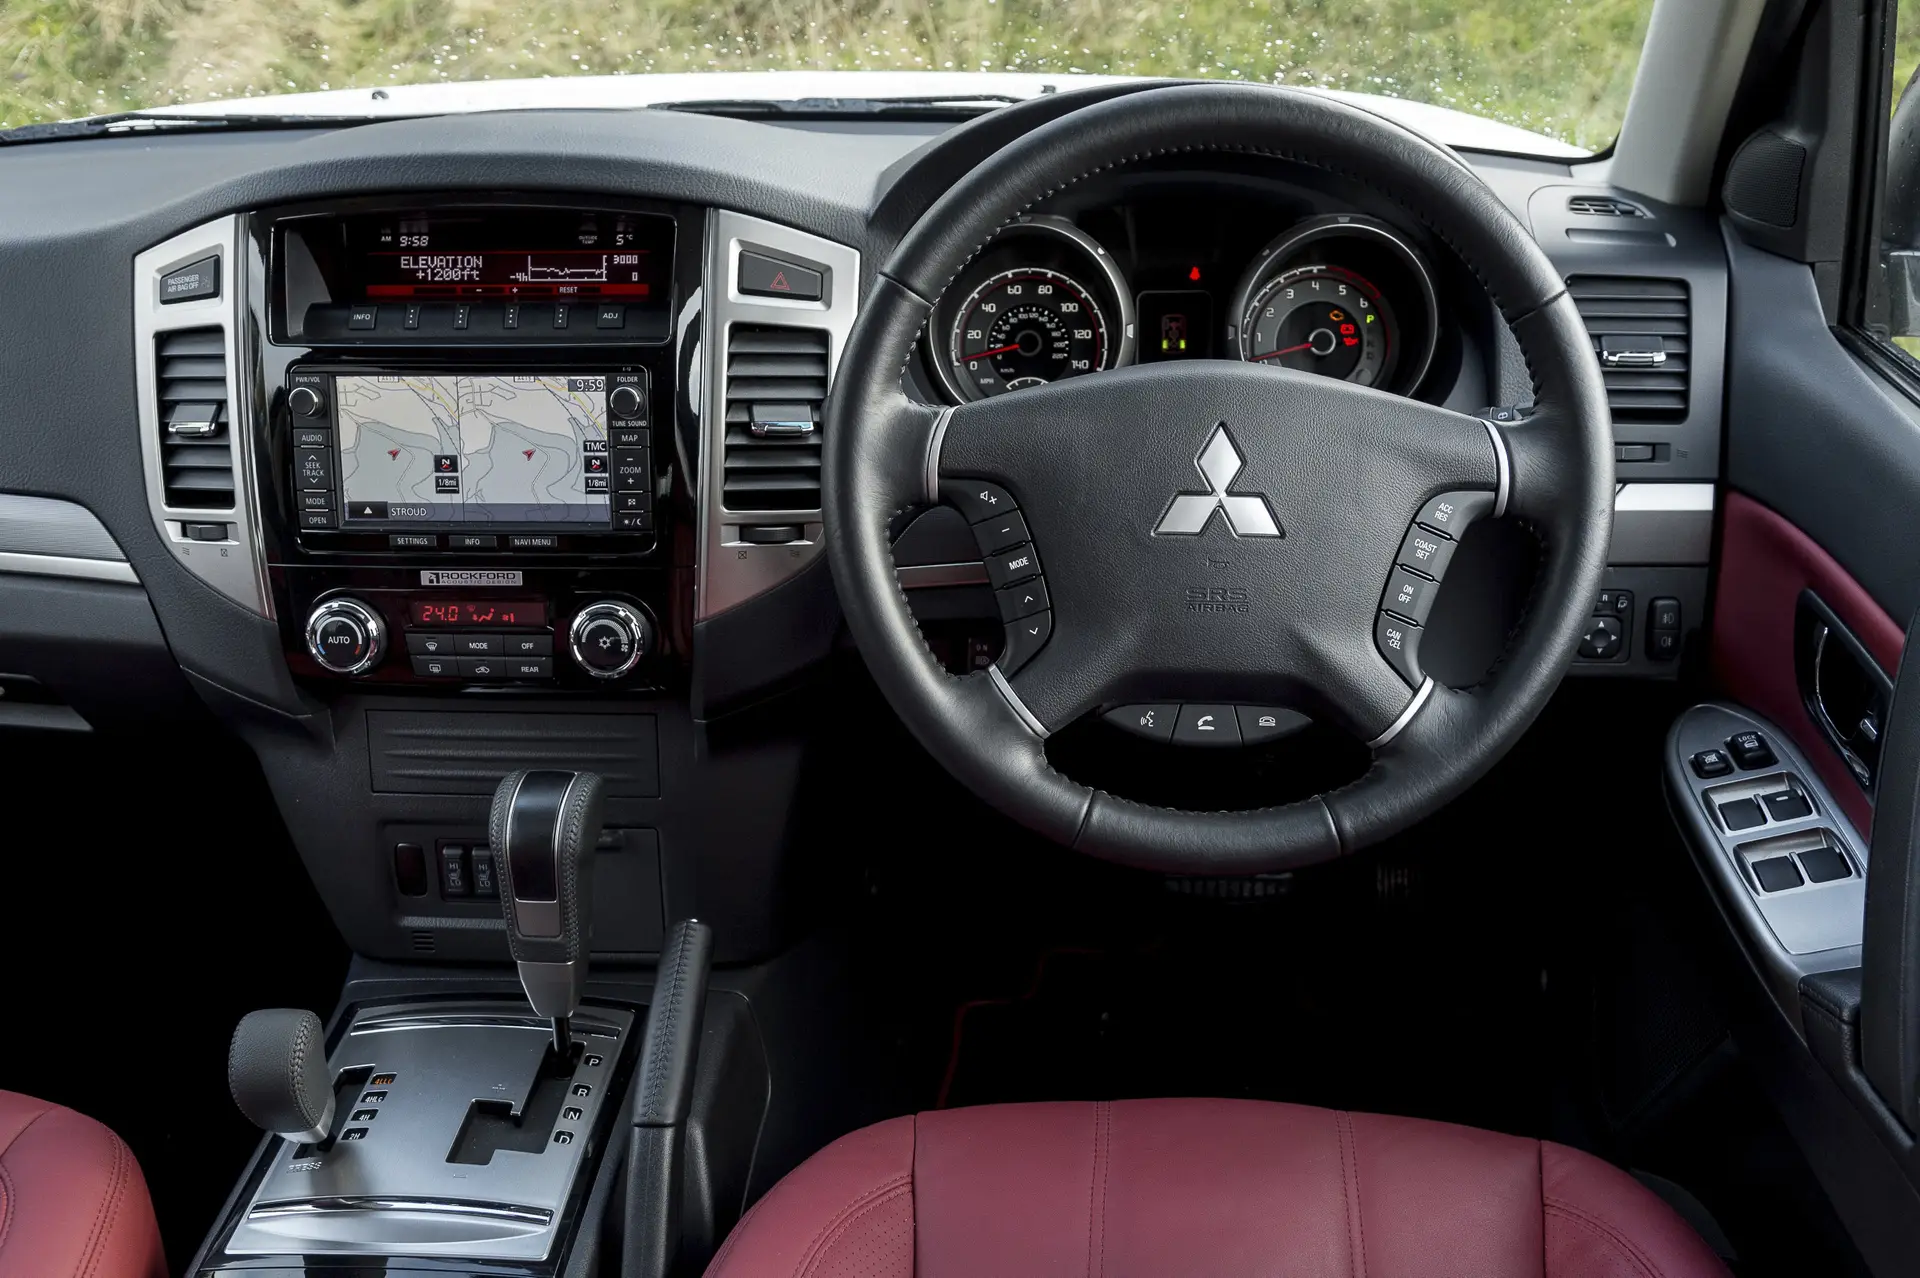 Mitsubishi Shogun (2007-2018) Review: interior close up photo of the Mitsubishi Shogun dashboard